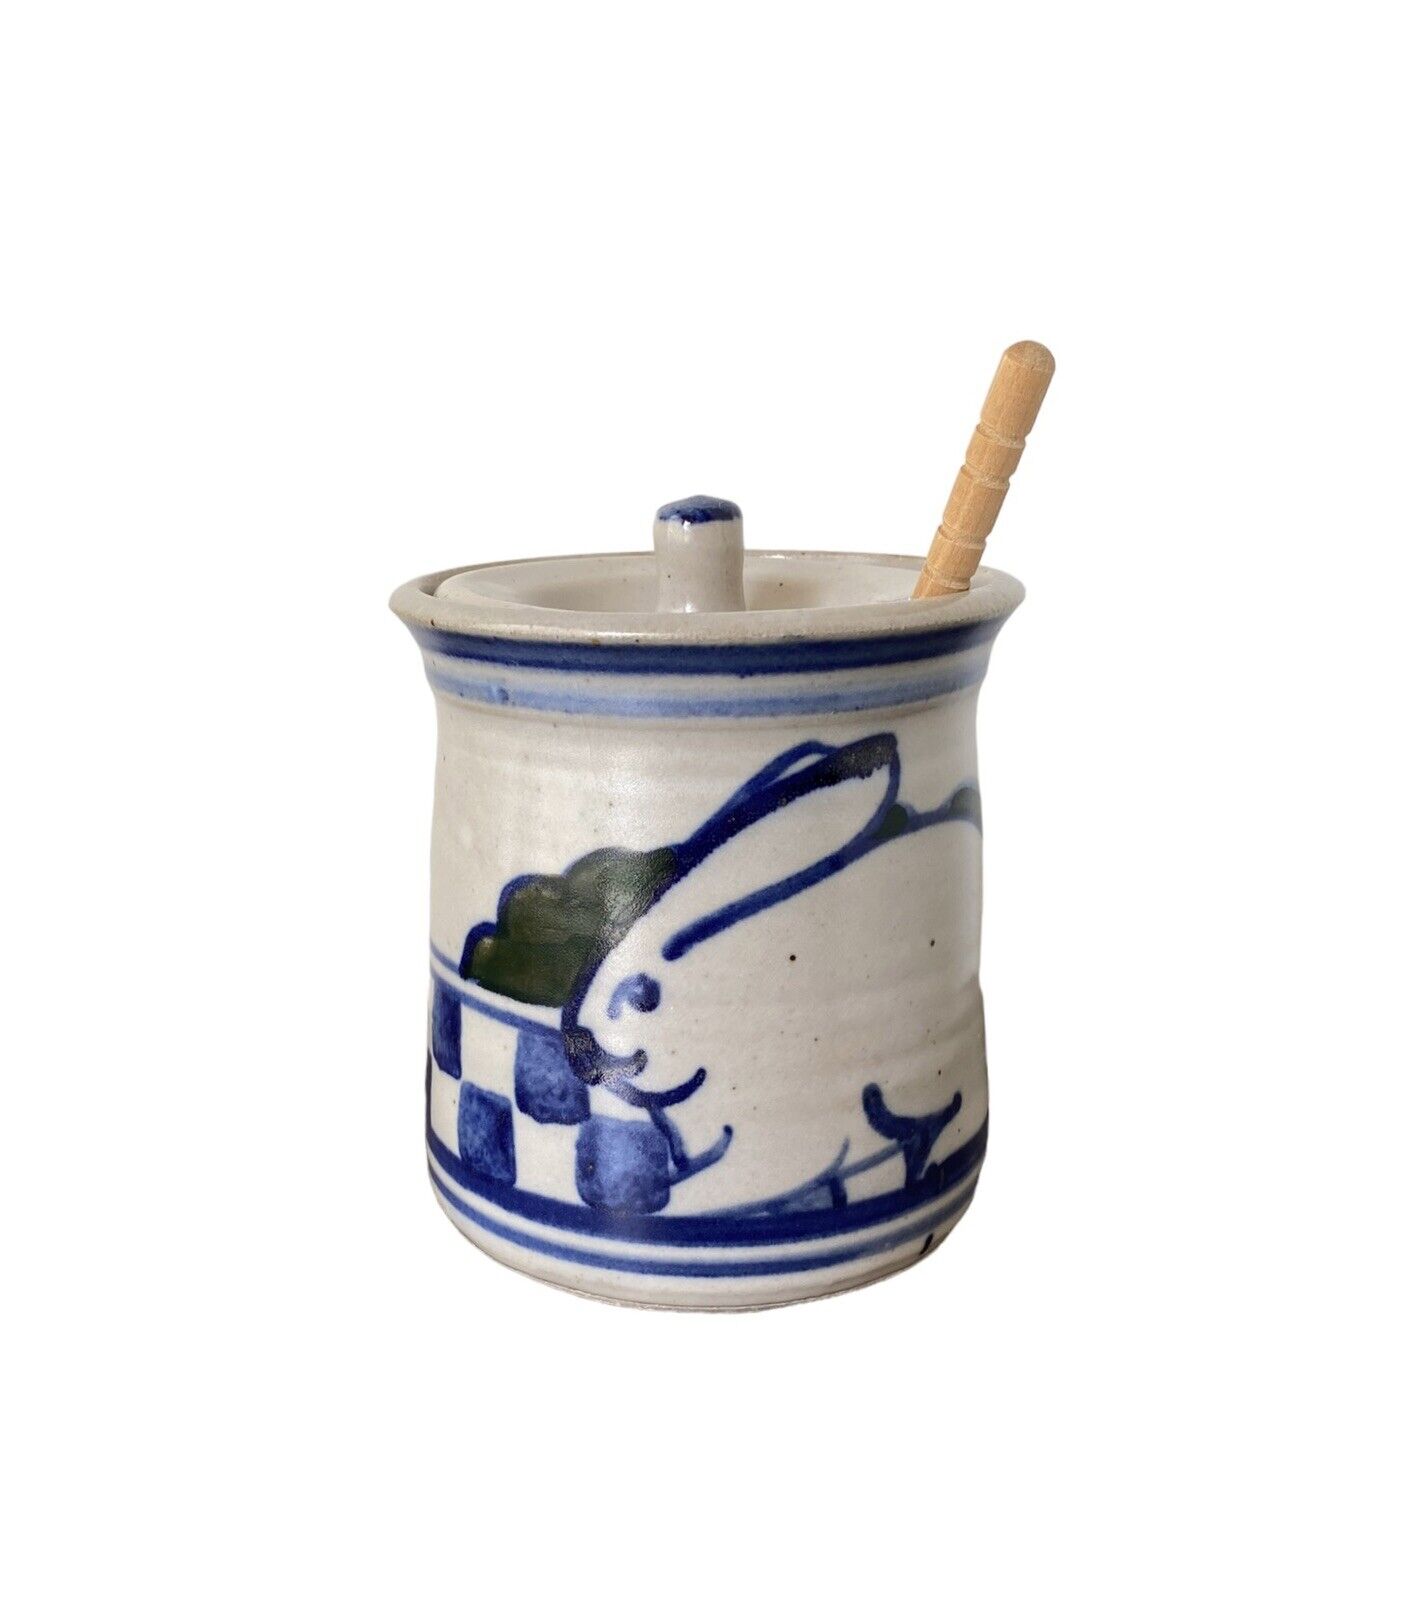 Debbie Dean Pottery Honey Crock Jar & Lid Bunny Rabbit Checkerboard 4.5” x 4”